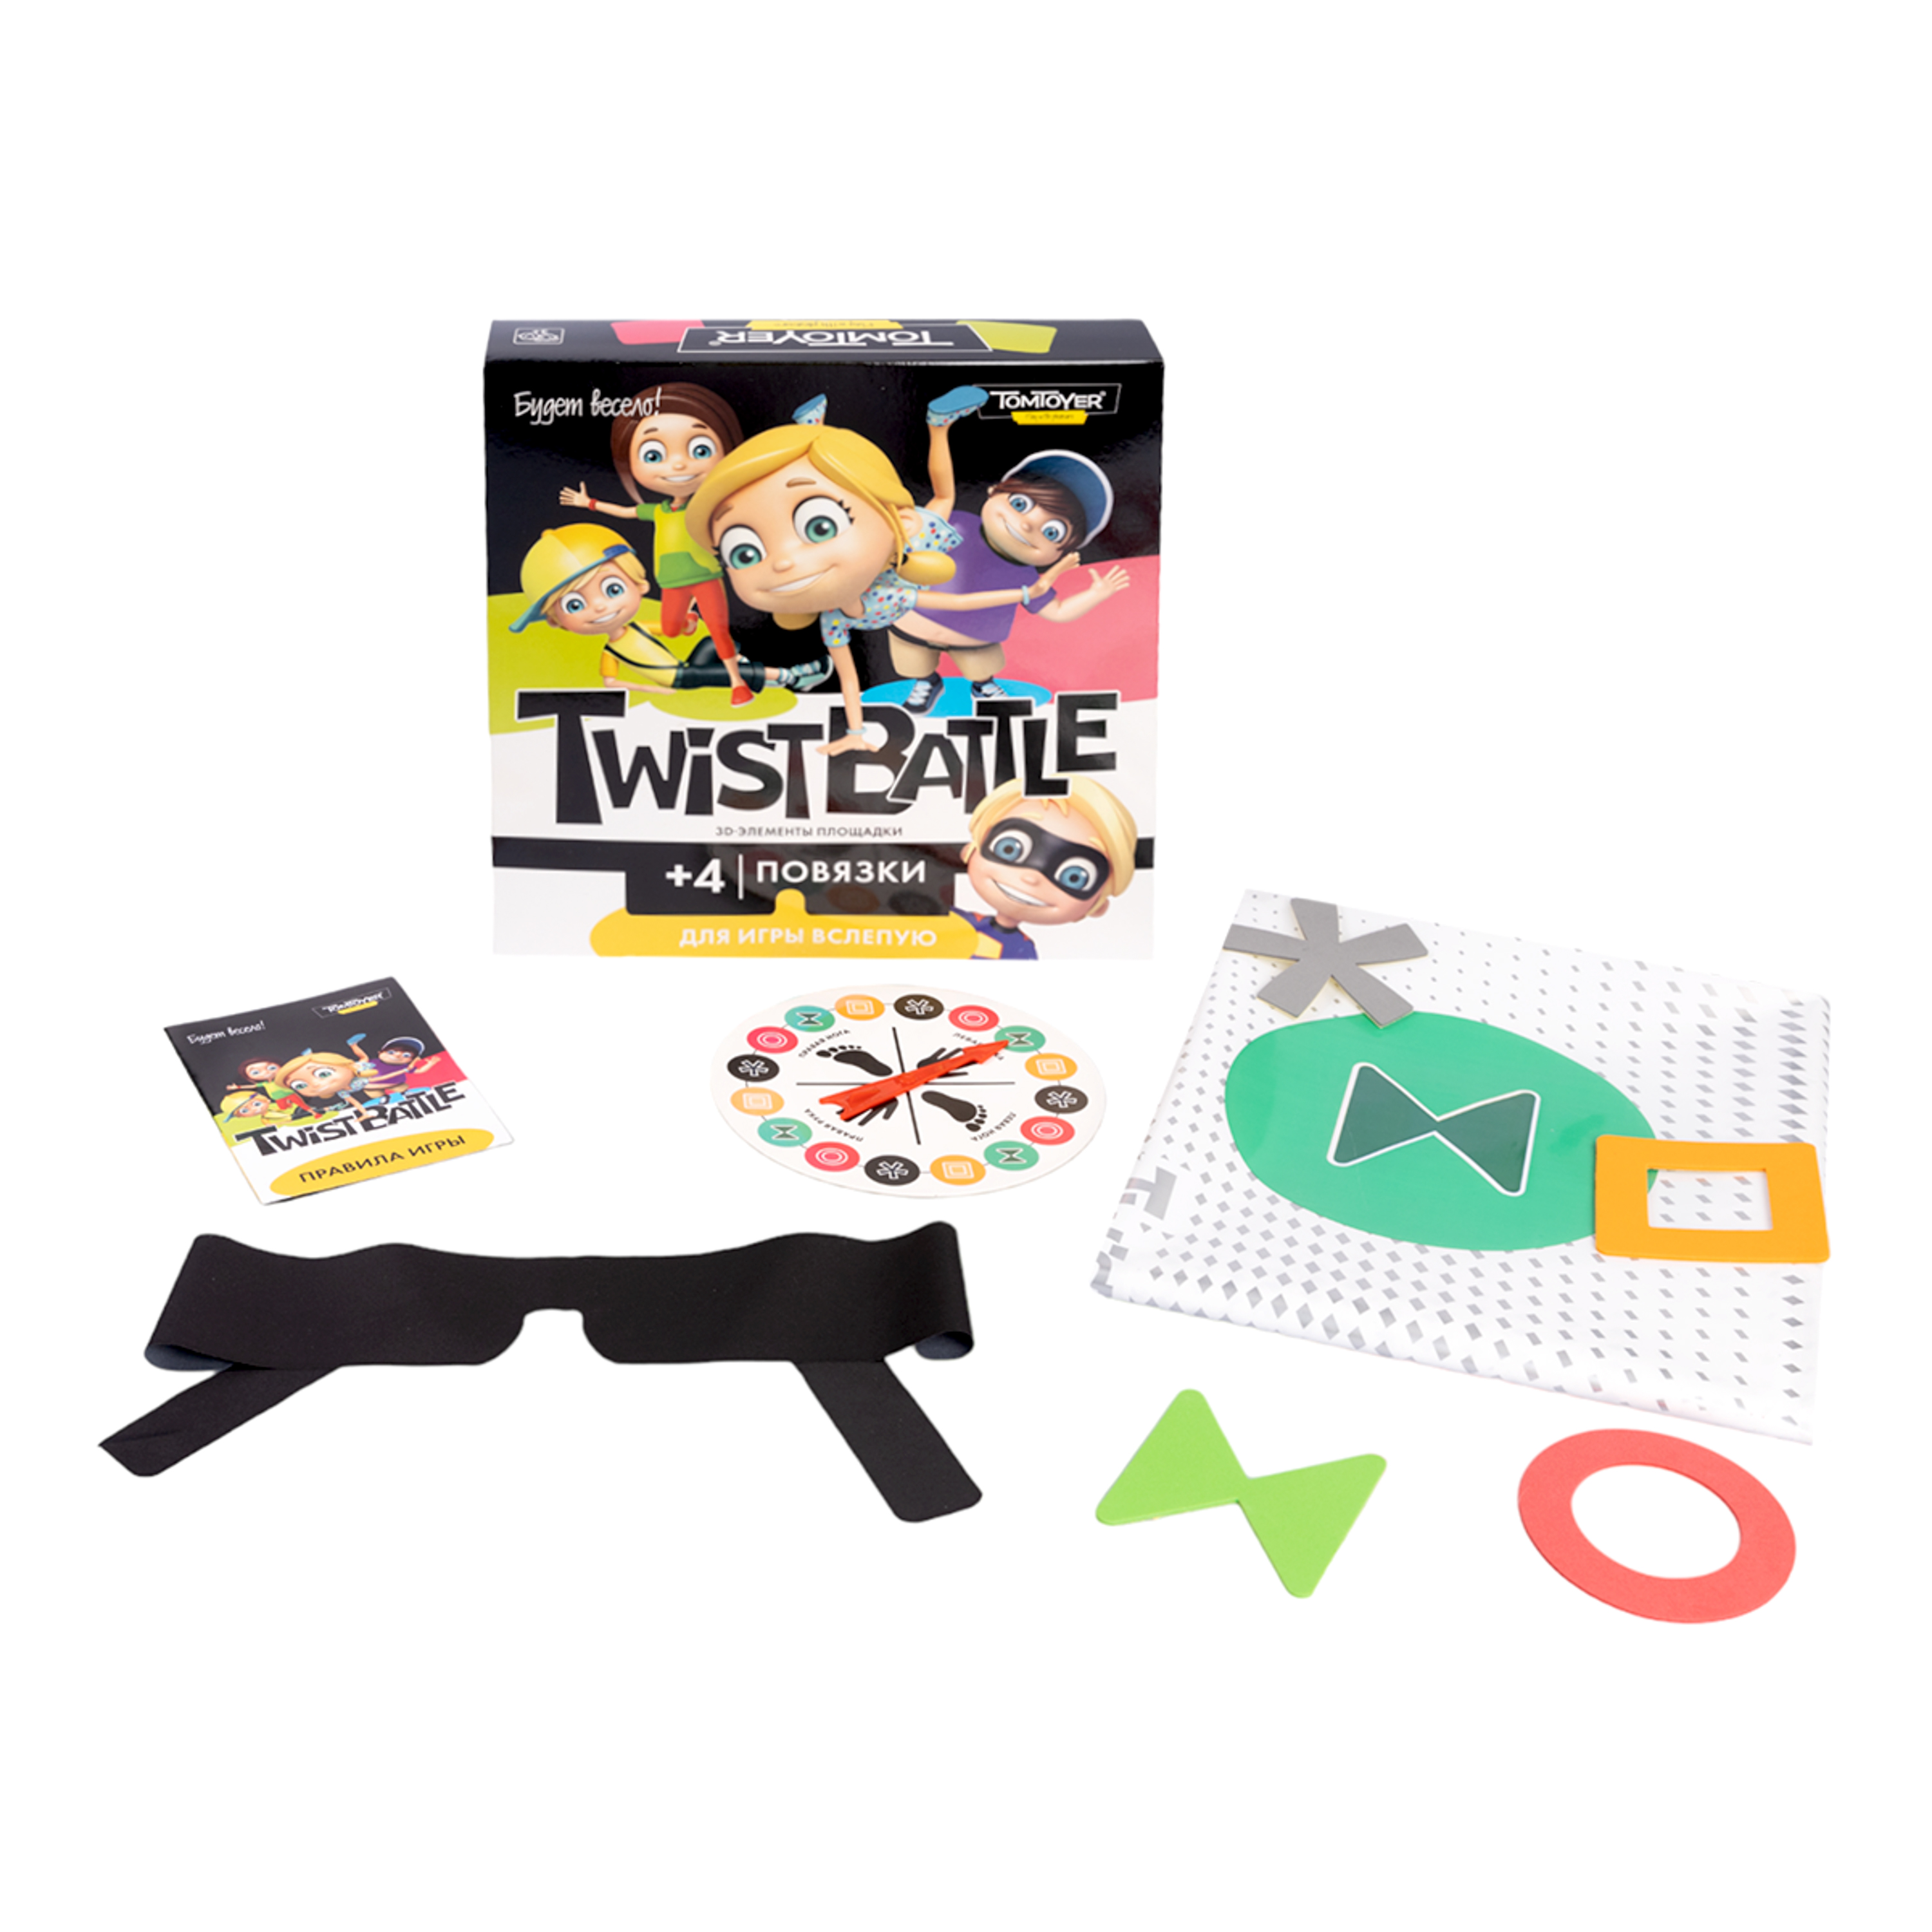 Игра для детей и взрослых TwistBattle (TomToyer), (поле 1,2 х1,48 м) (Вид 2)